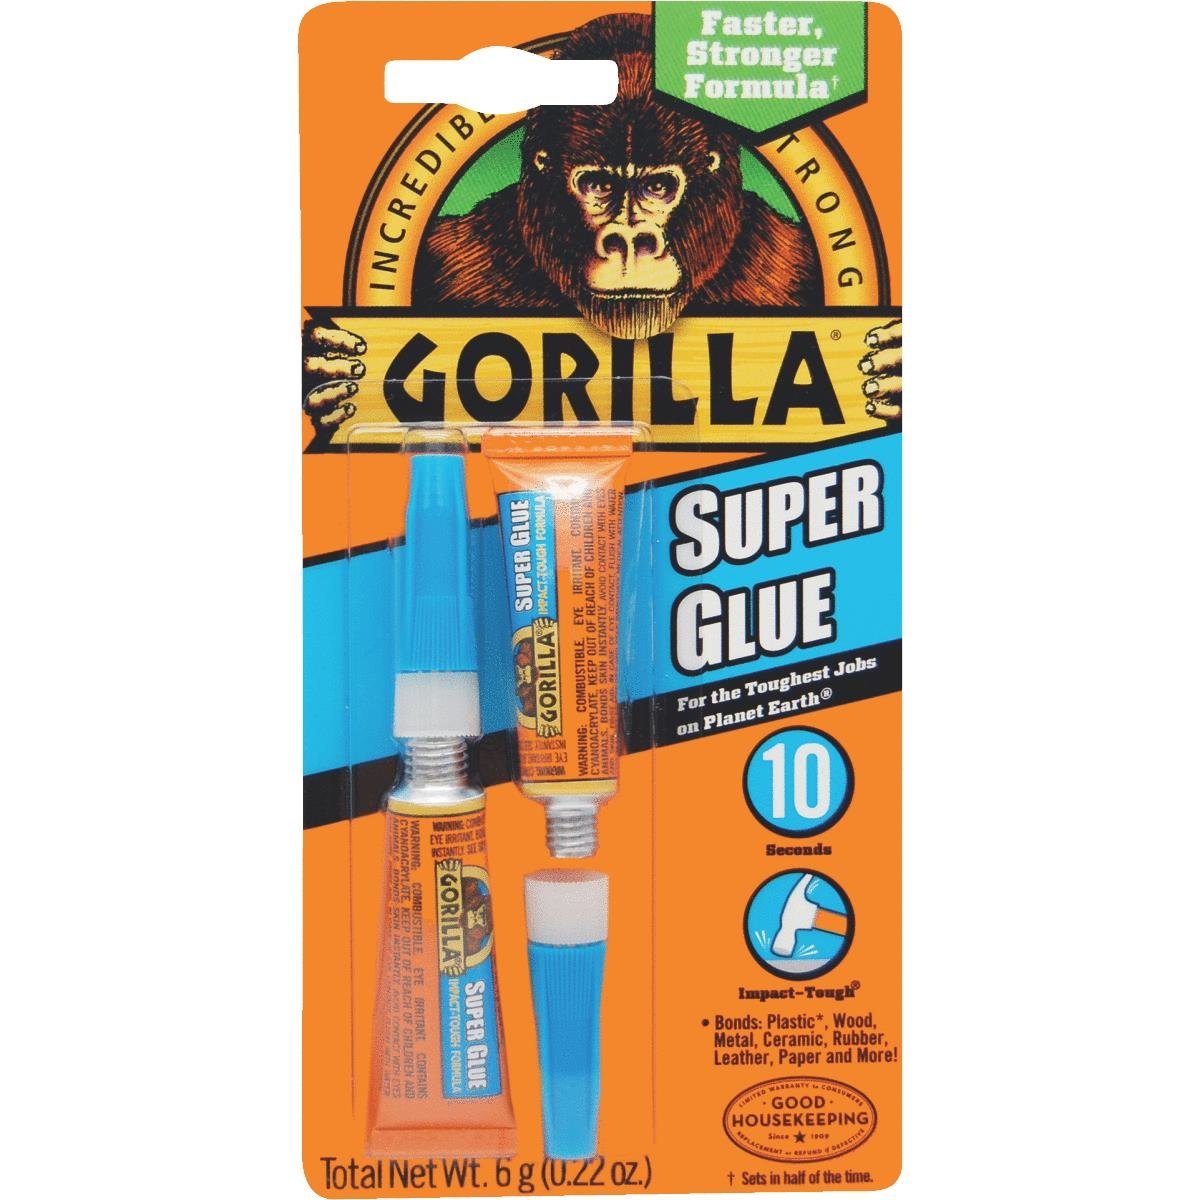 Gorilla Super Glue Singles – 2 Pack